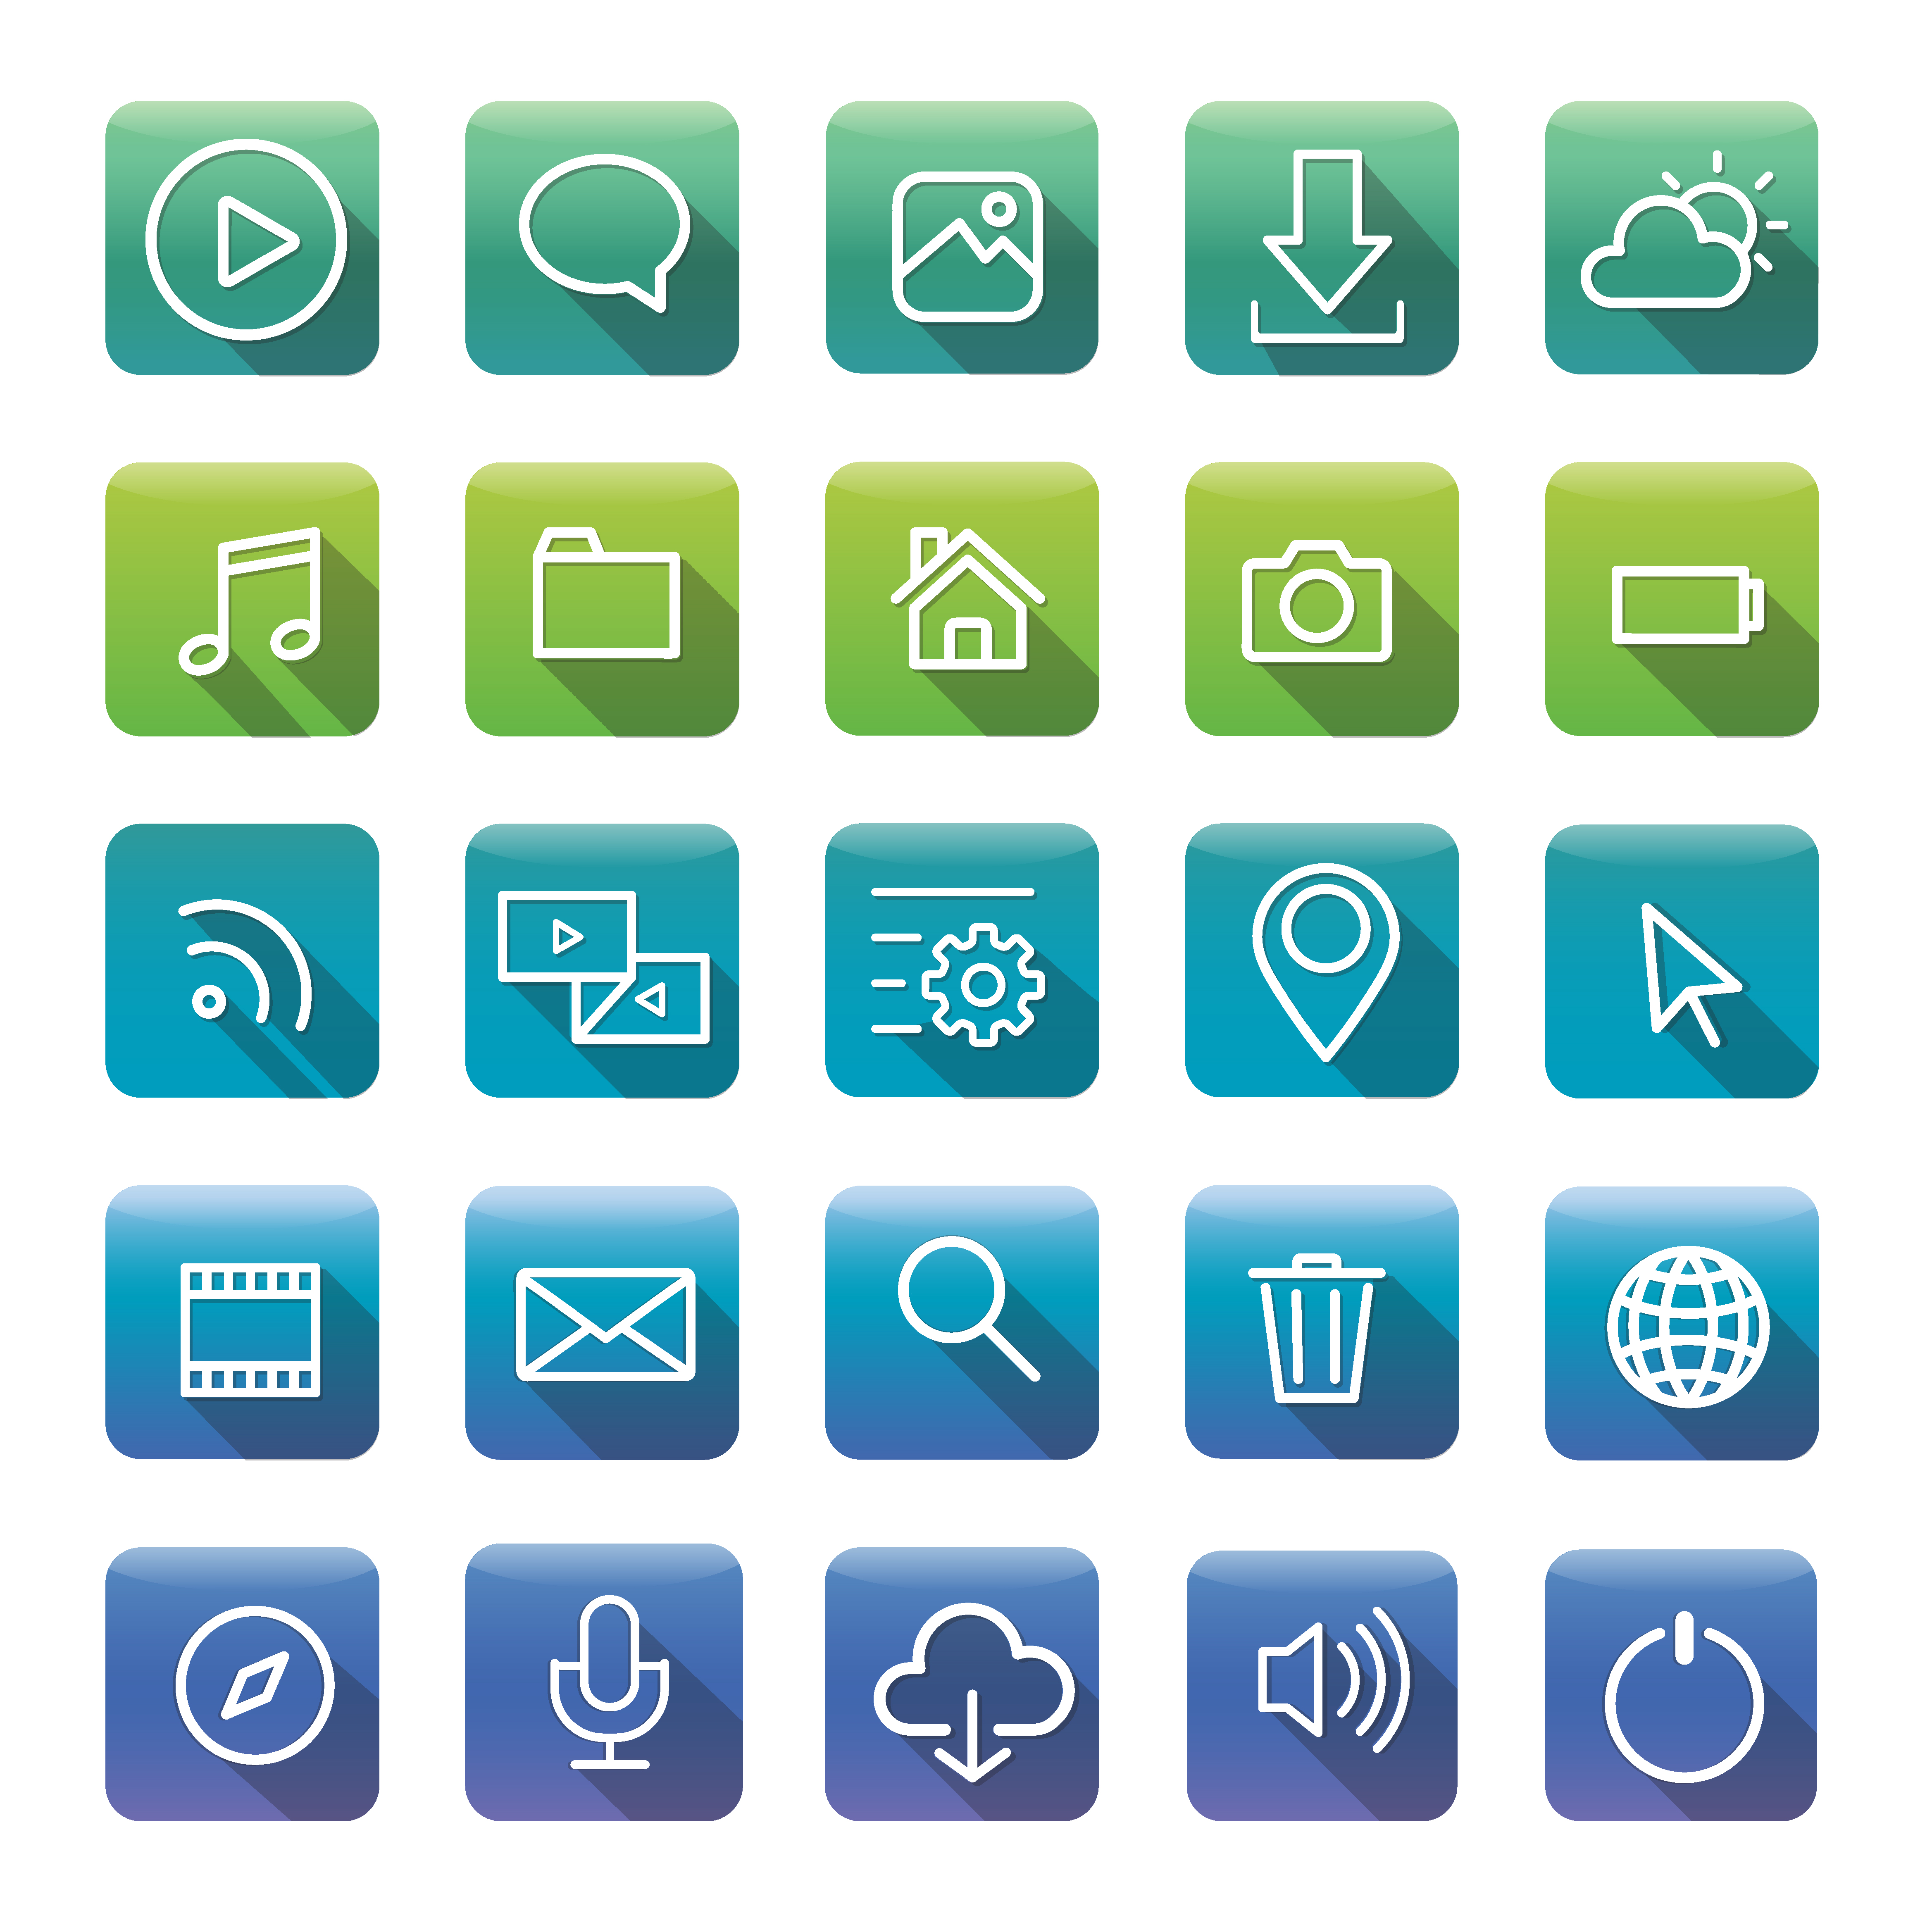  Icons  and symbols  set Download Free  Vectors Clipart 